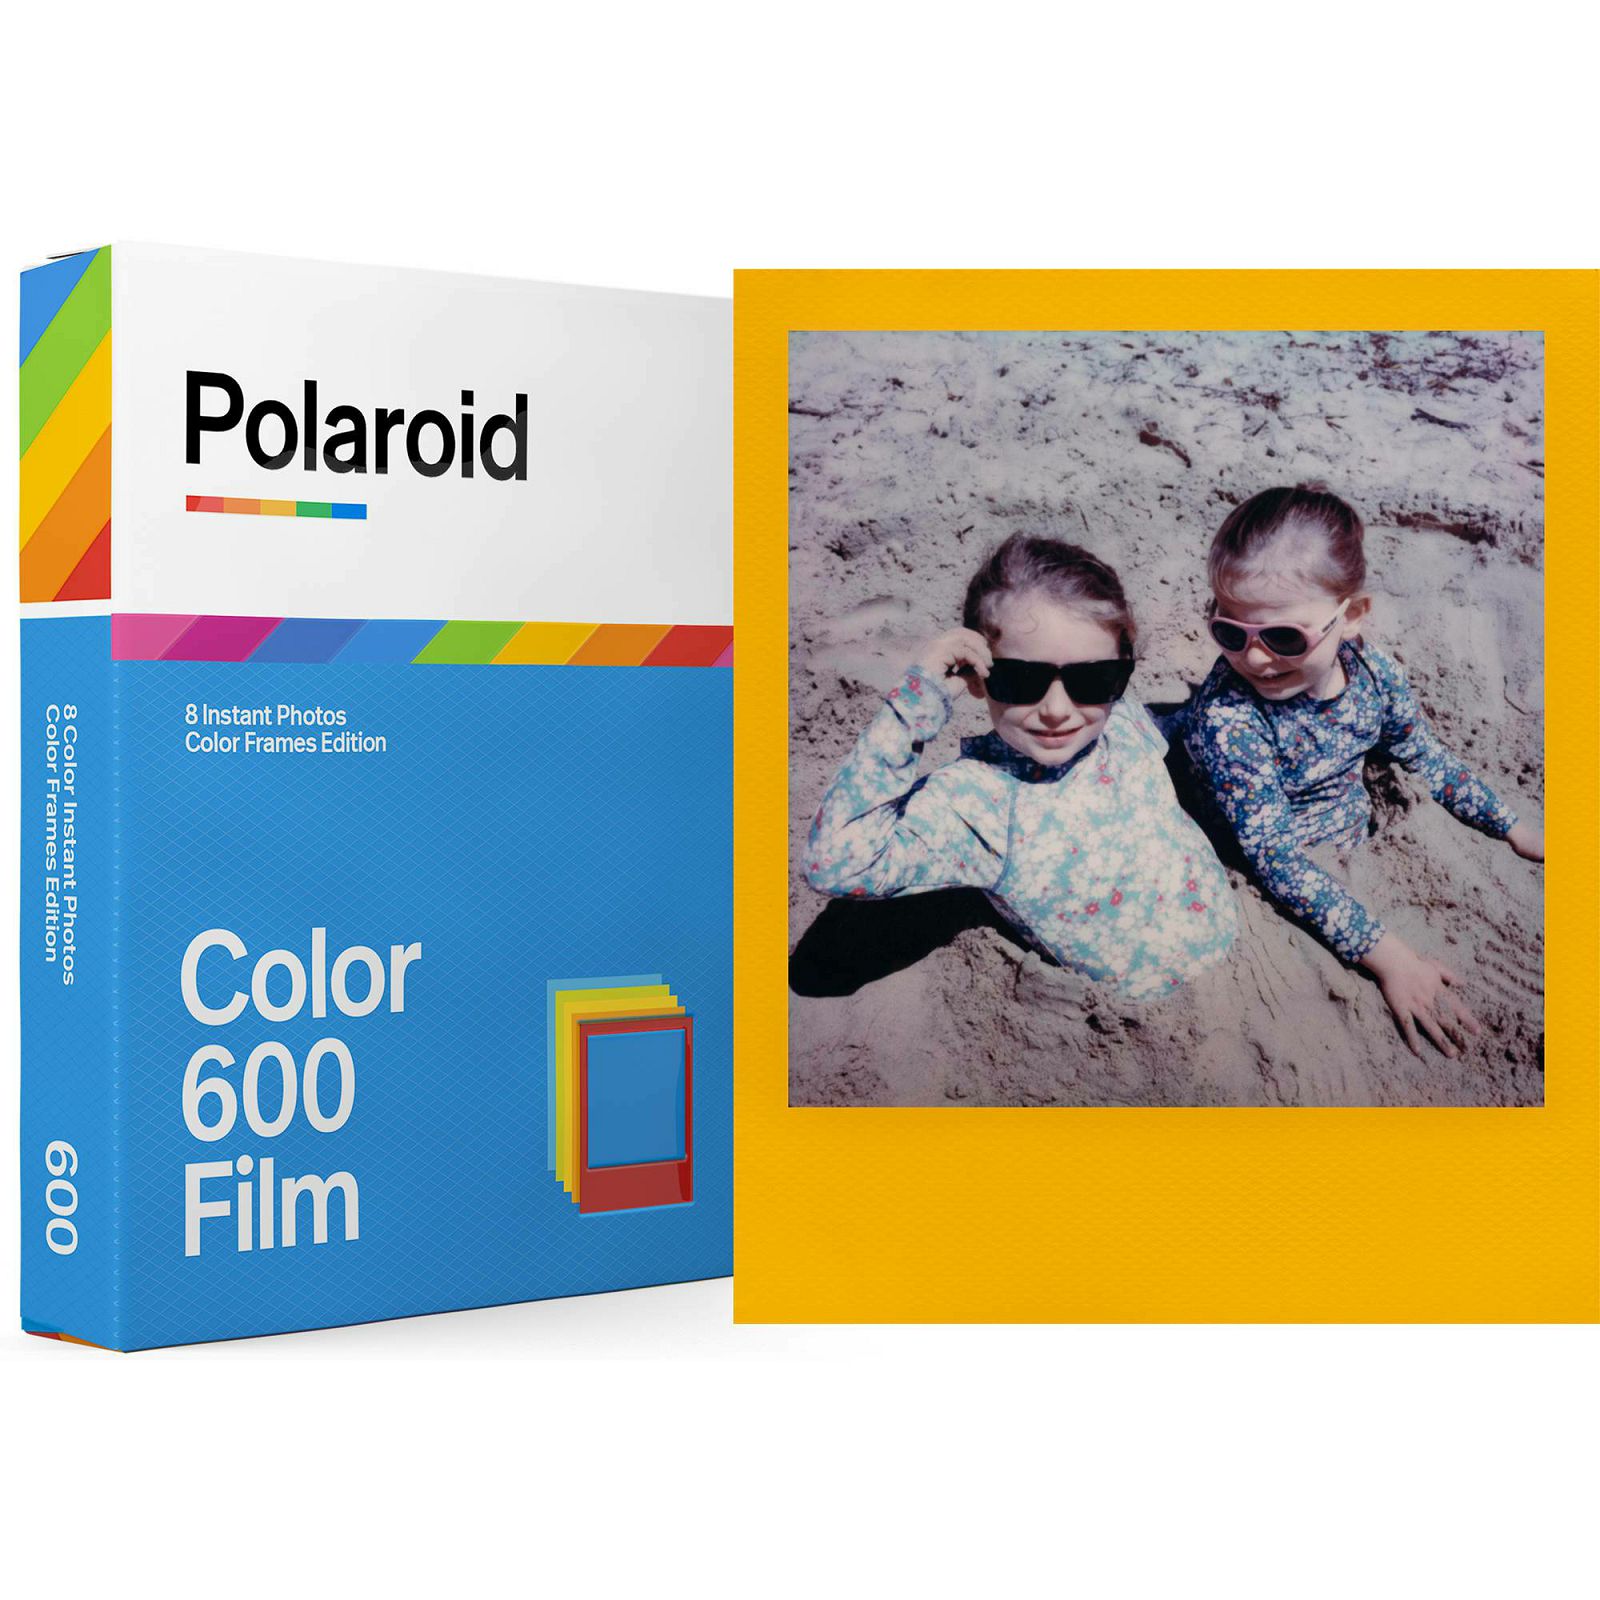 Polaroid Originals Color Film for 600 Color Frames papir za fotografije u boji za Instant fotoaparate (006015)